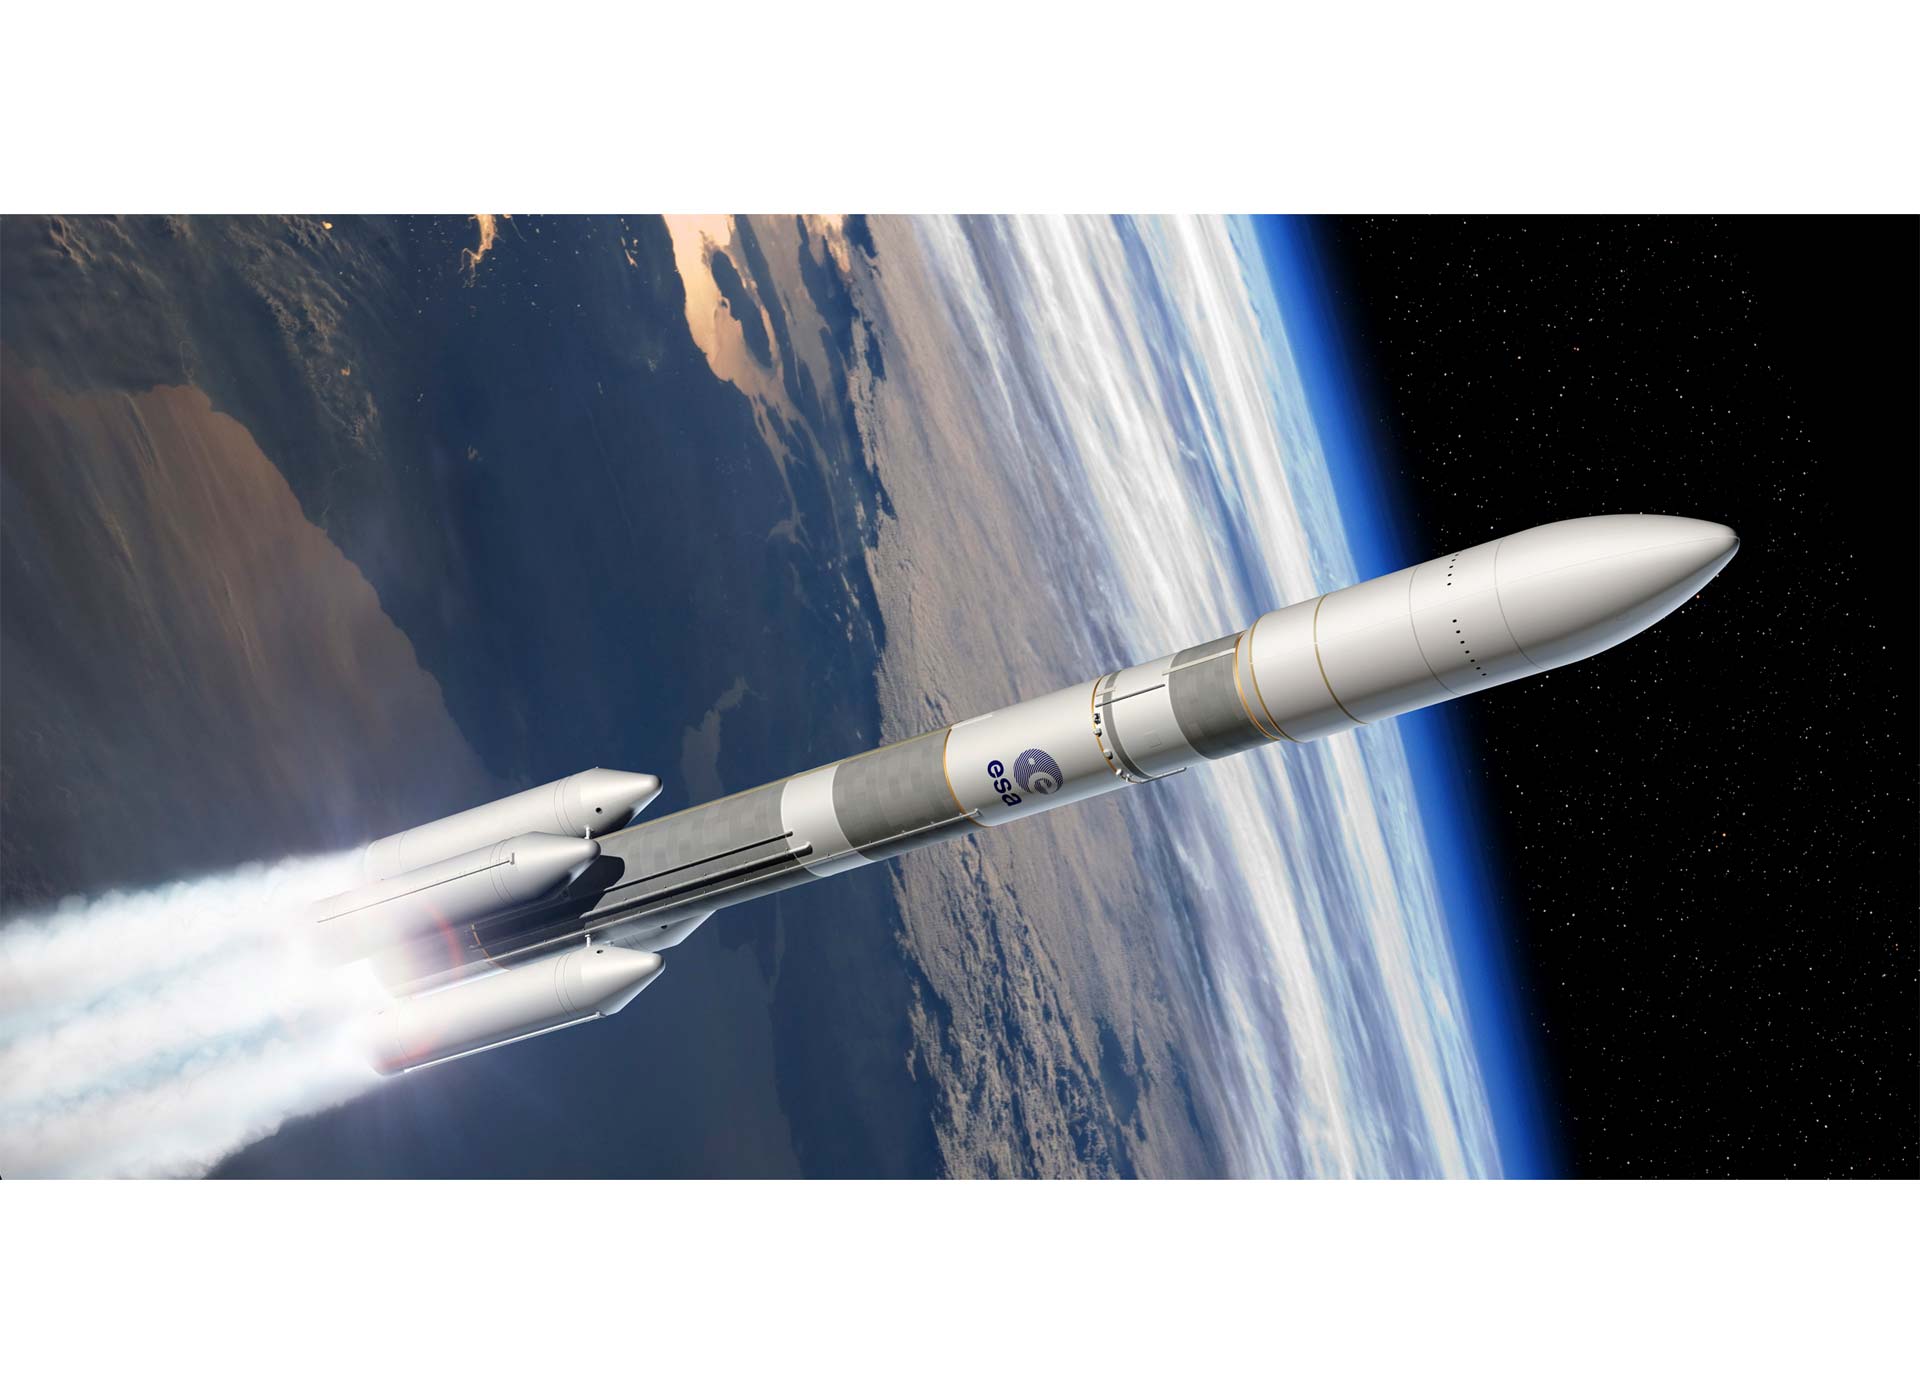 Con el Ariane 6 buscan abaratar los costos de lanzamiento. El primer vuelo de prueba será en el 2020